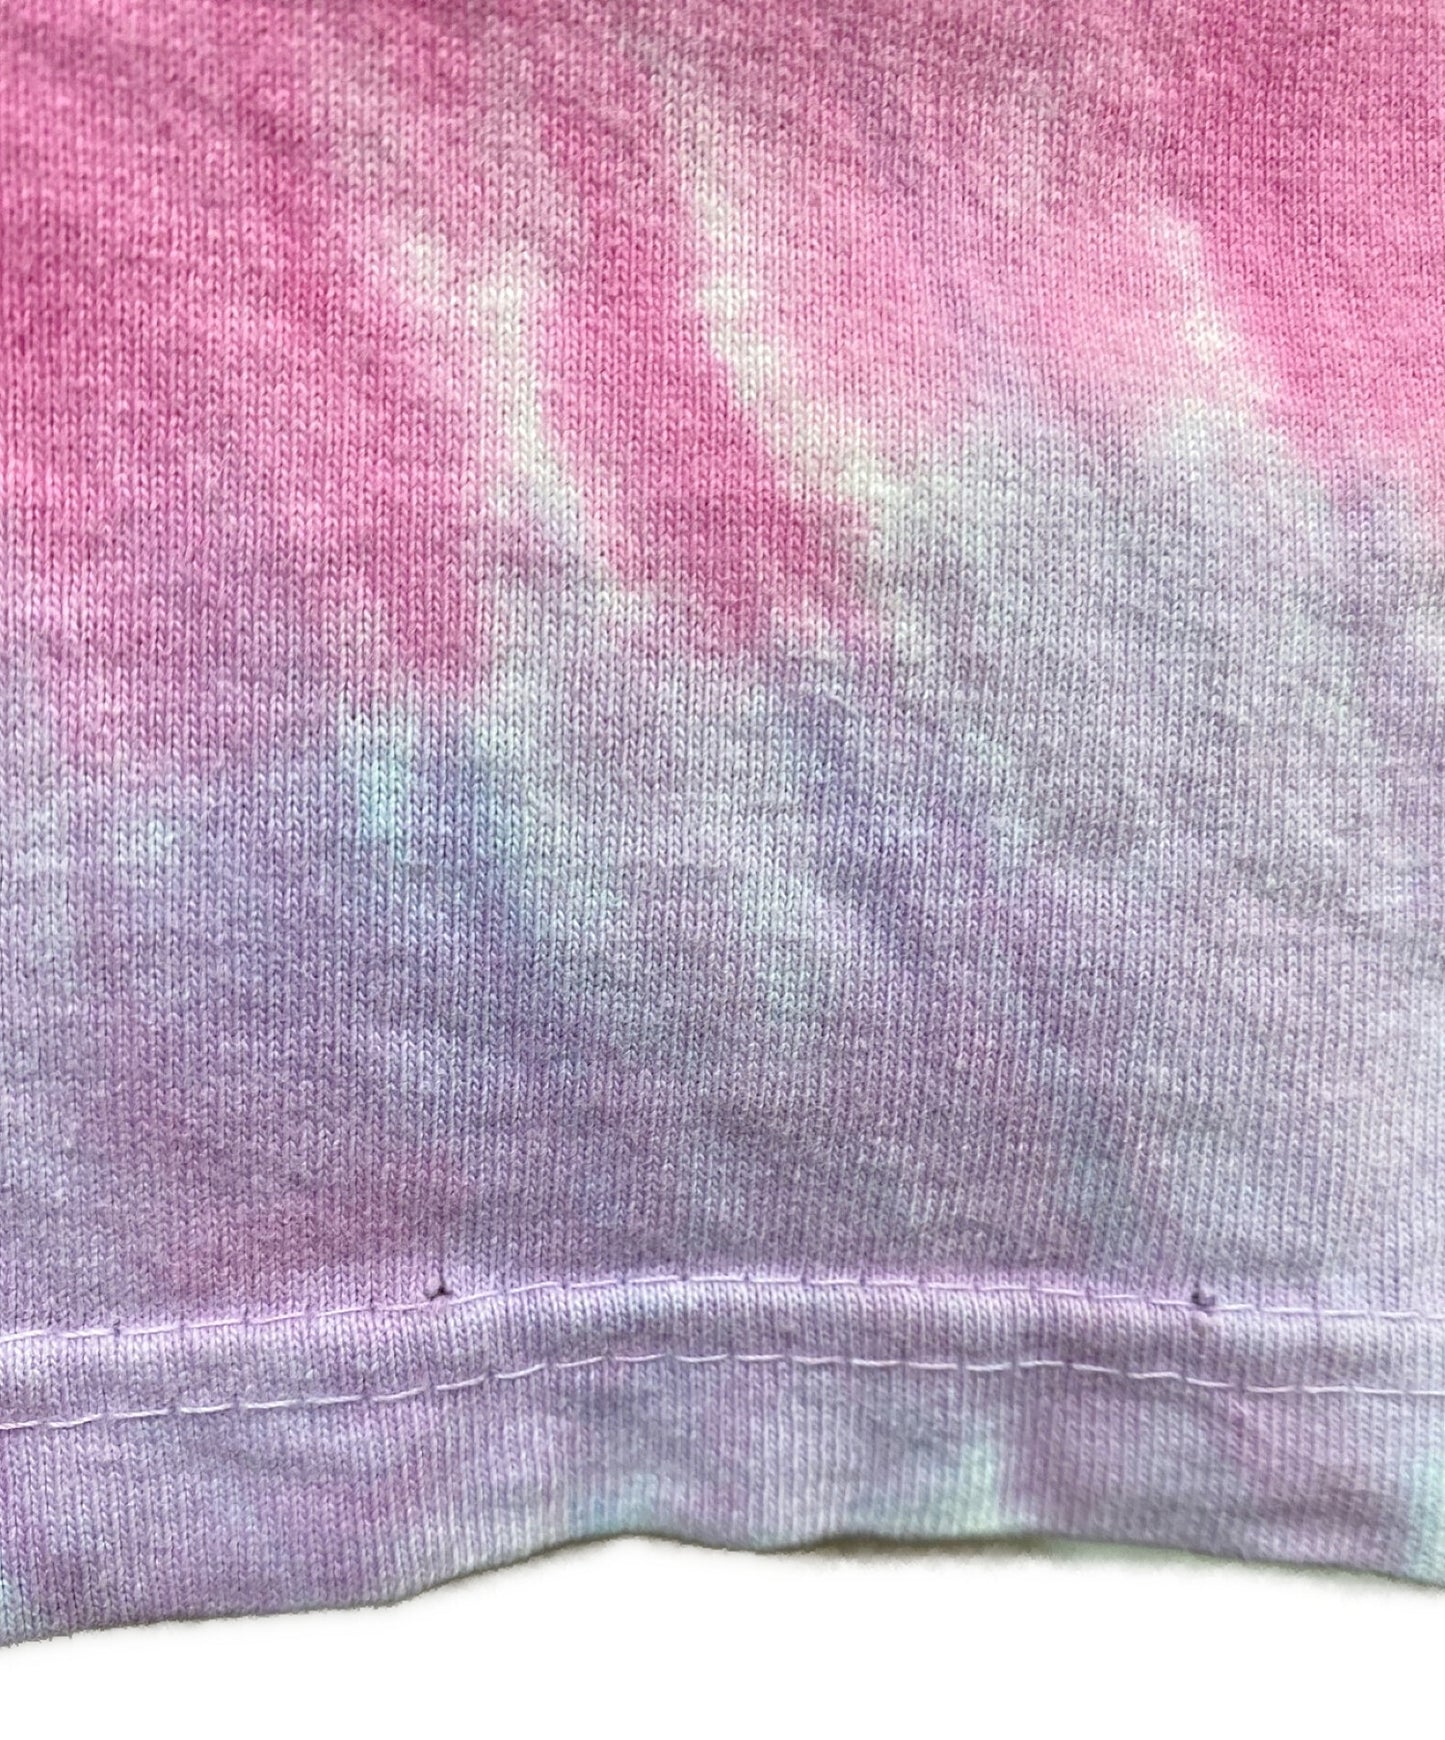 Liquid Blue Grateful Dead Spiral Bears Tie-Dye T-Shirt 1995 Copywrite